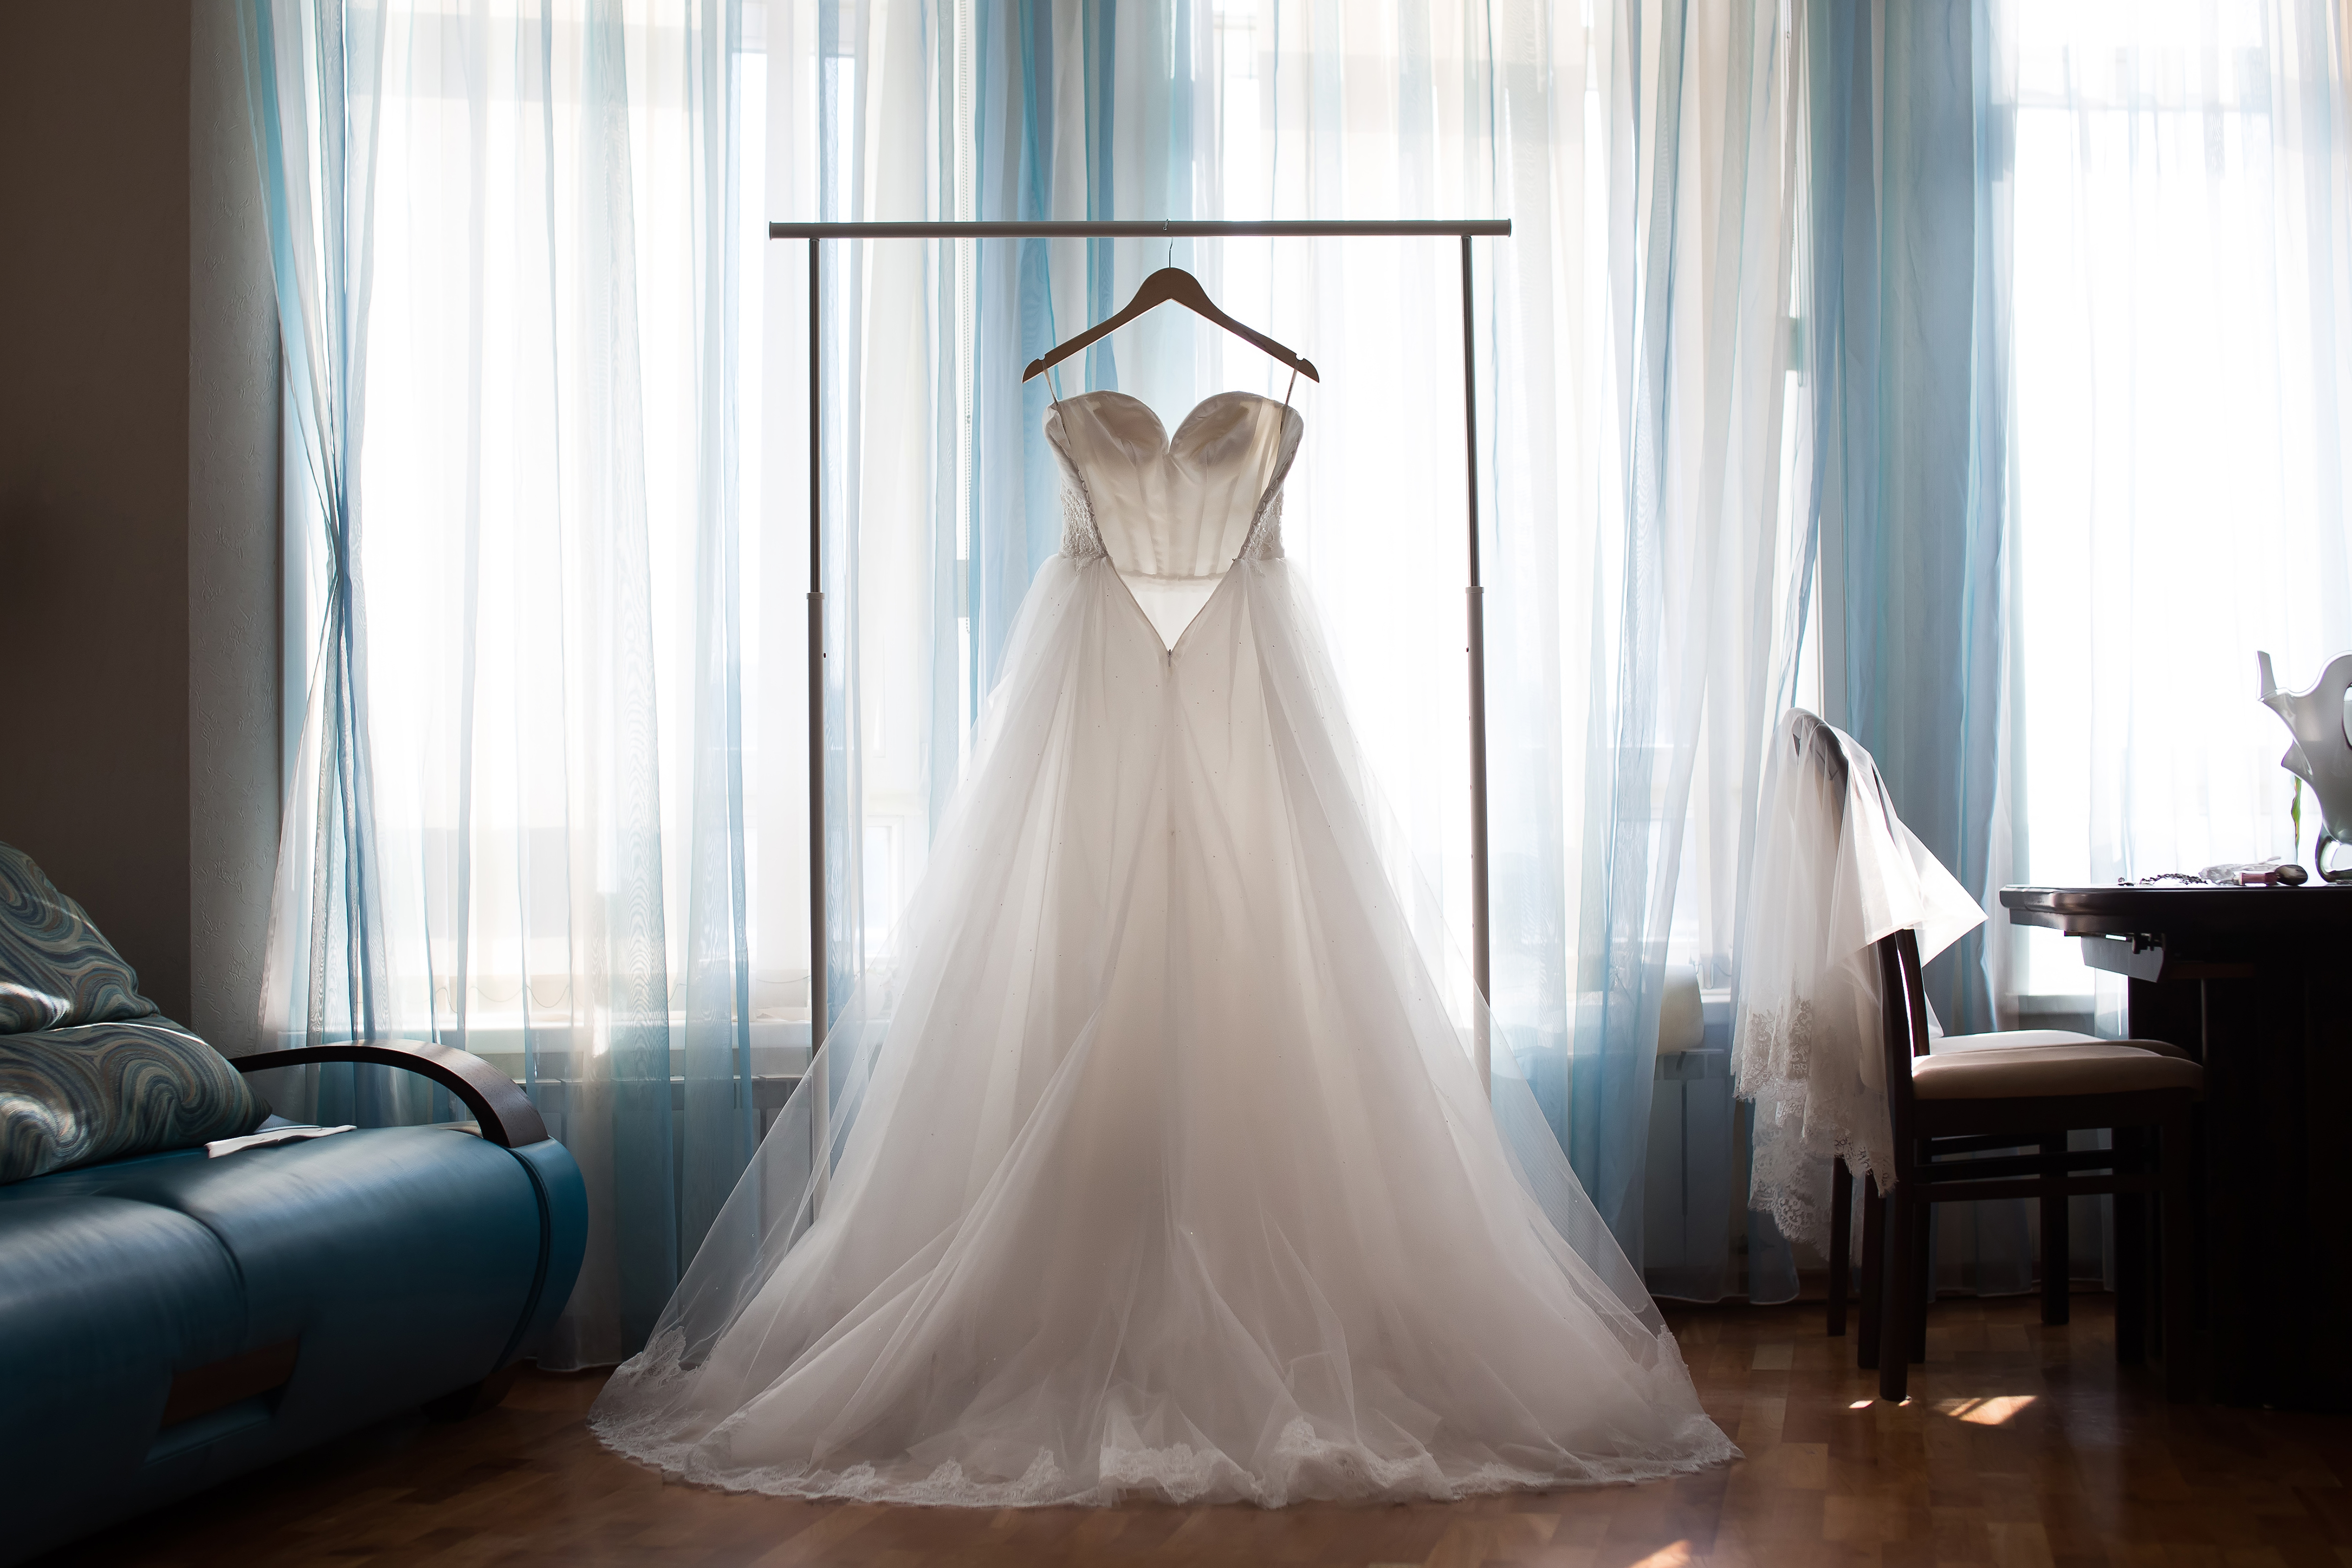 A white wedding dress on a hanger | Source: Shutterstock